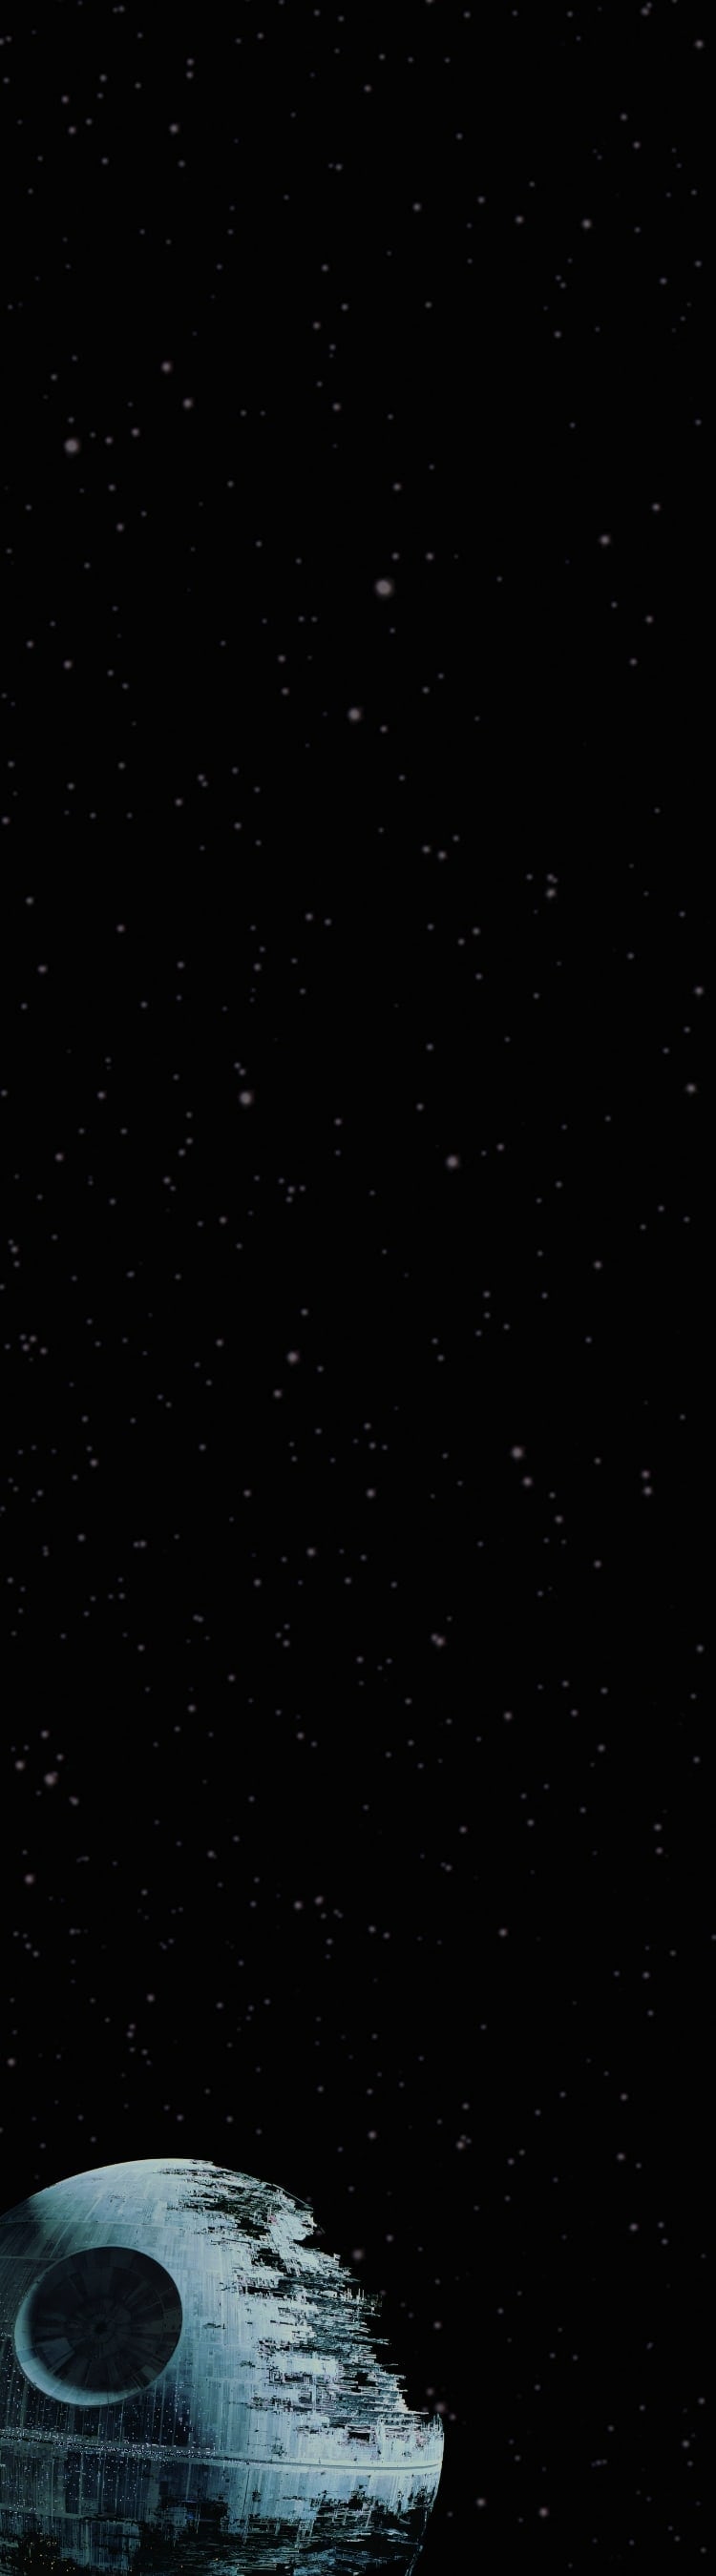 TIEファイターとデス・スターが浮かぶ宇宙の画像